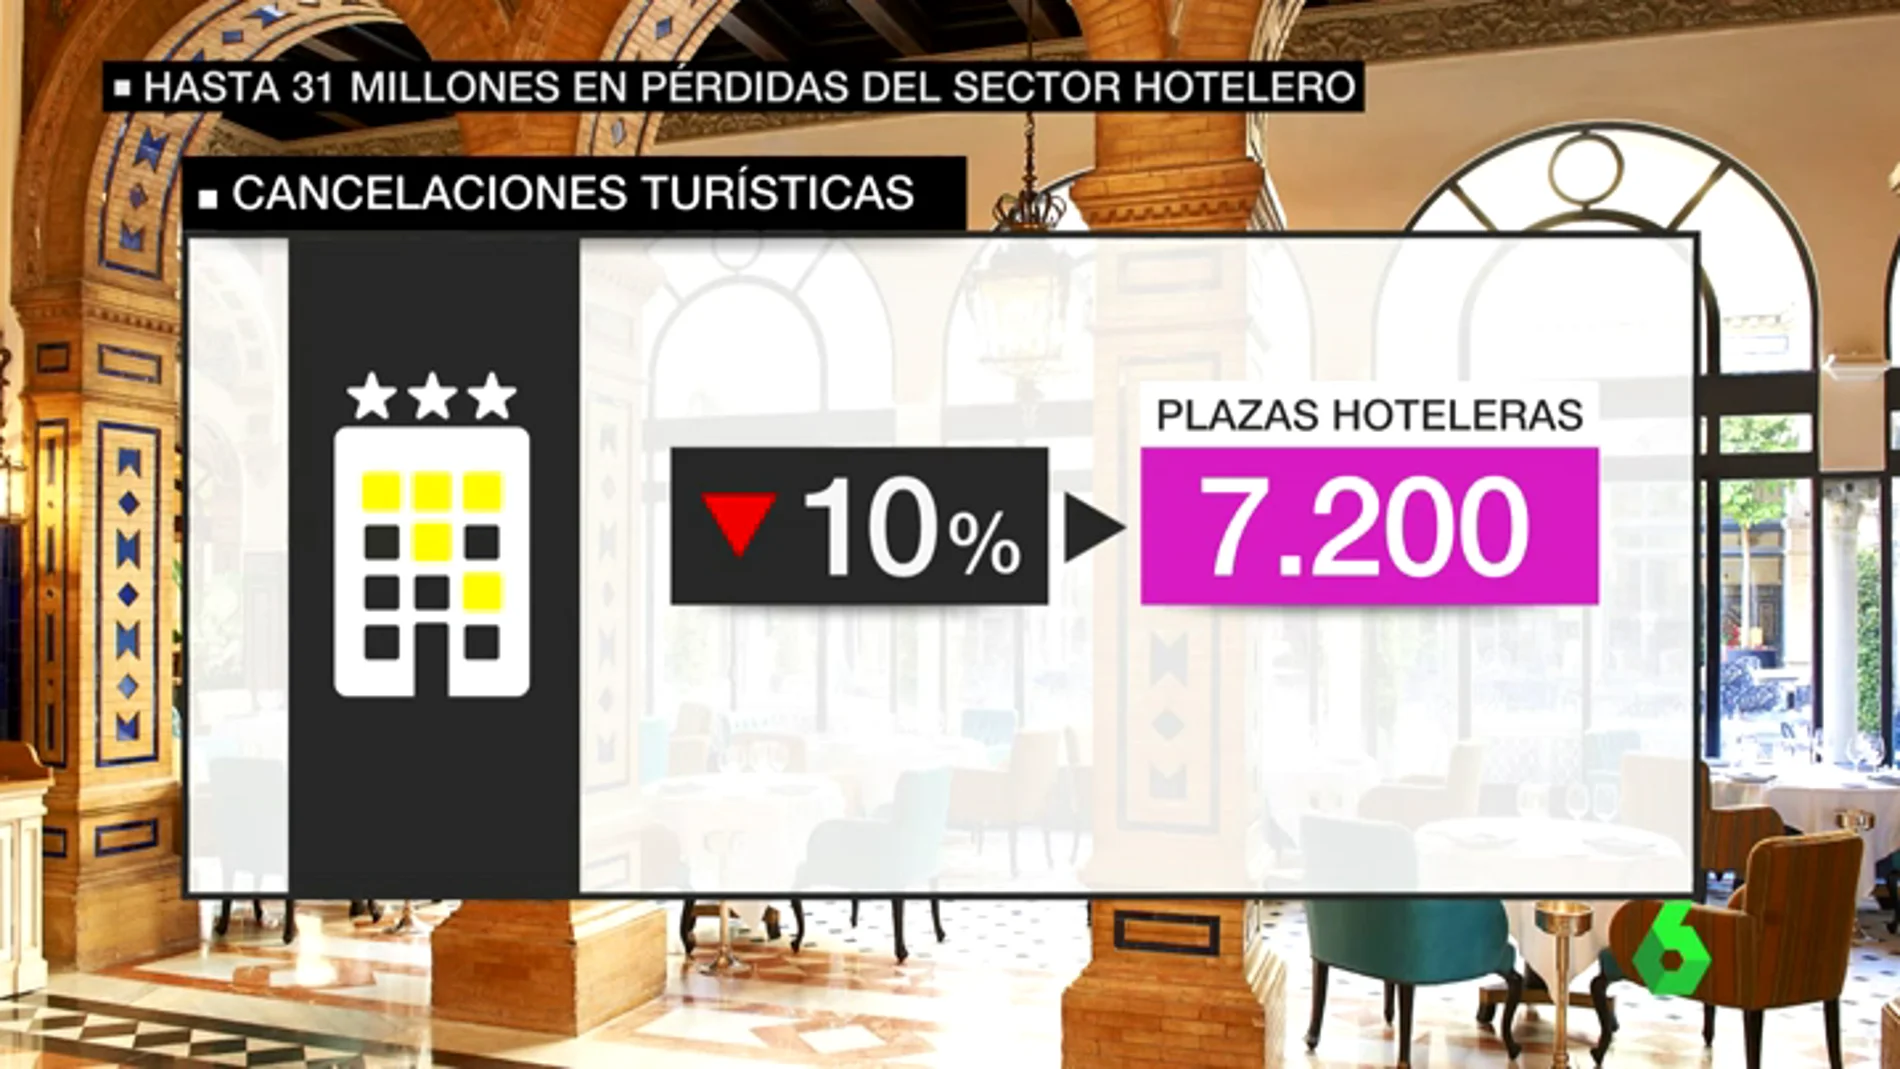 Los hosteleros catalanes aseguran que están perdiendo más de un millón de euros en cancelaciones tras el 1-O